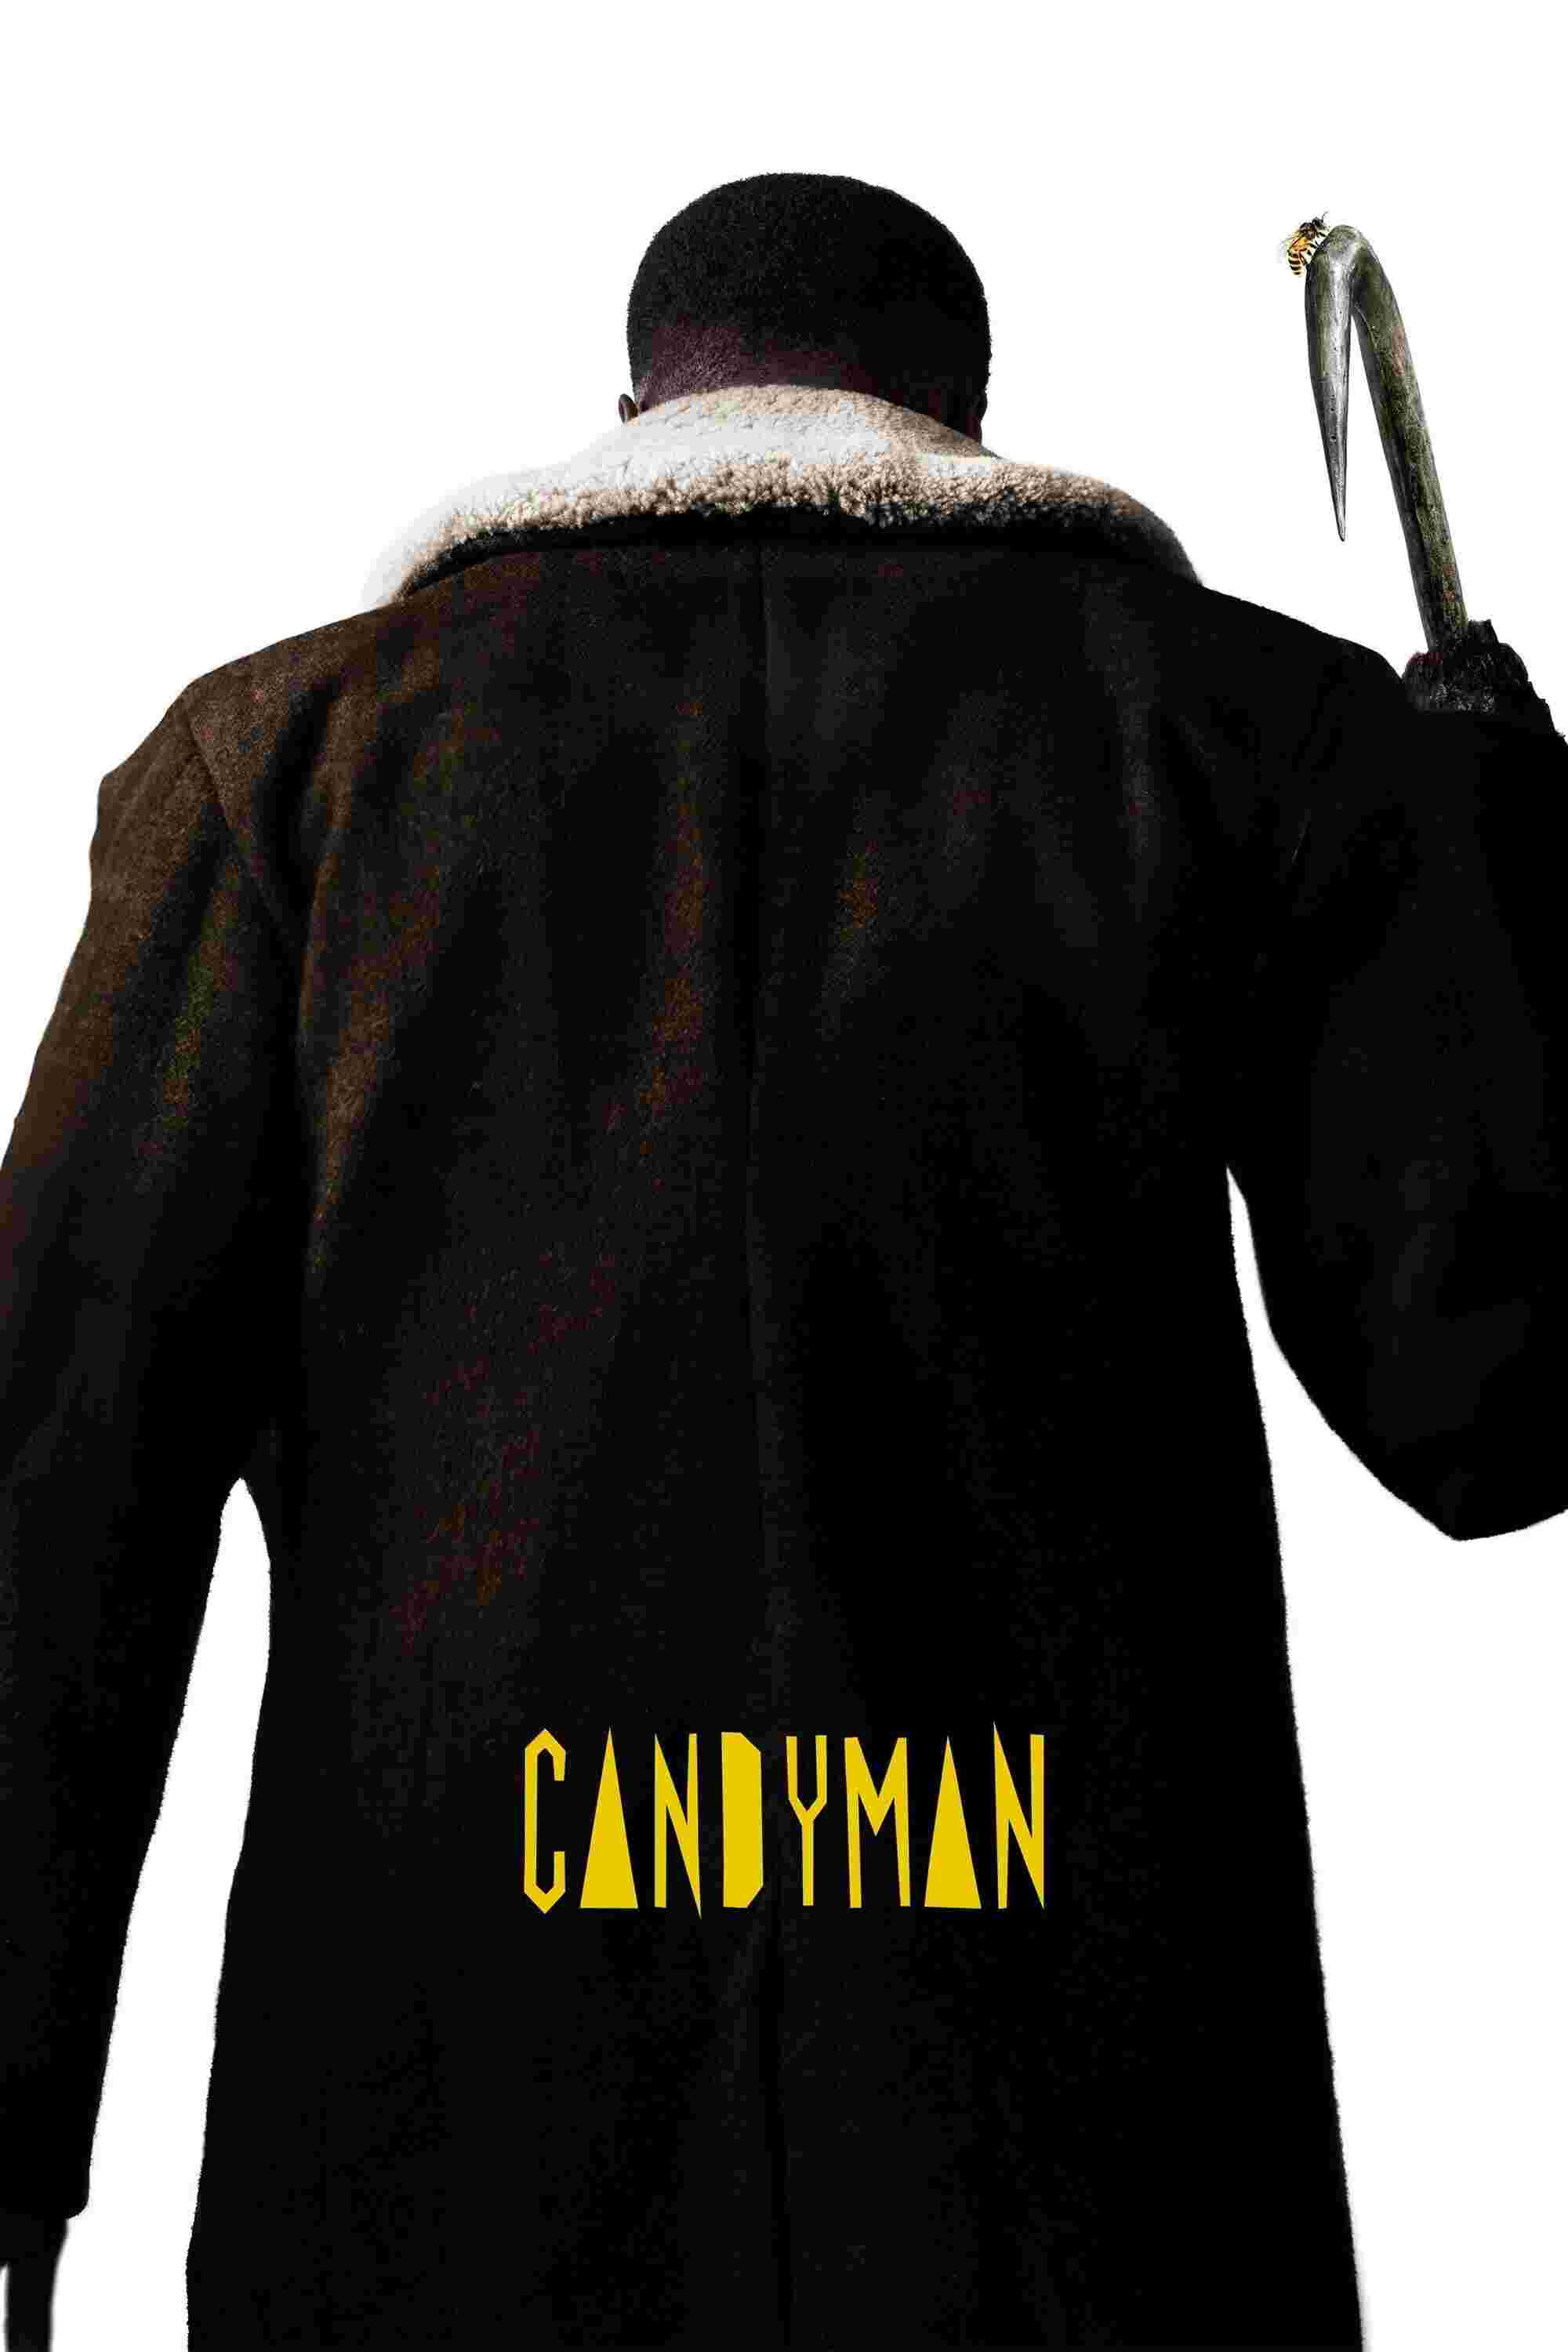 Candyman (2021) Yahya Abdul-Mateen II